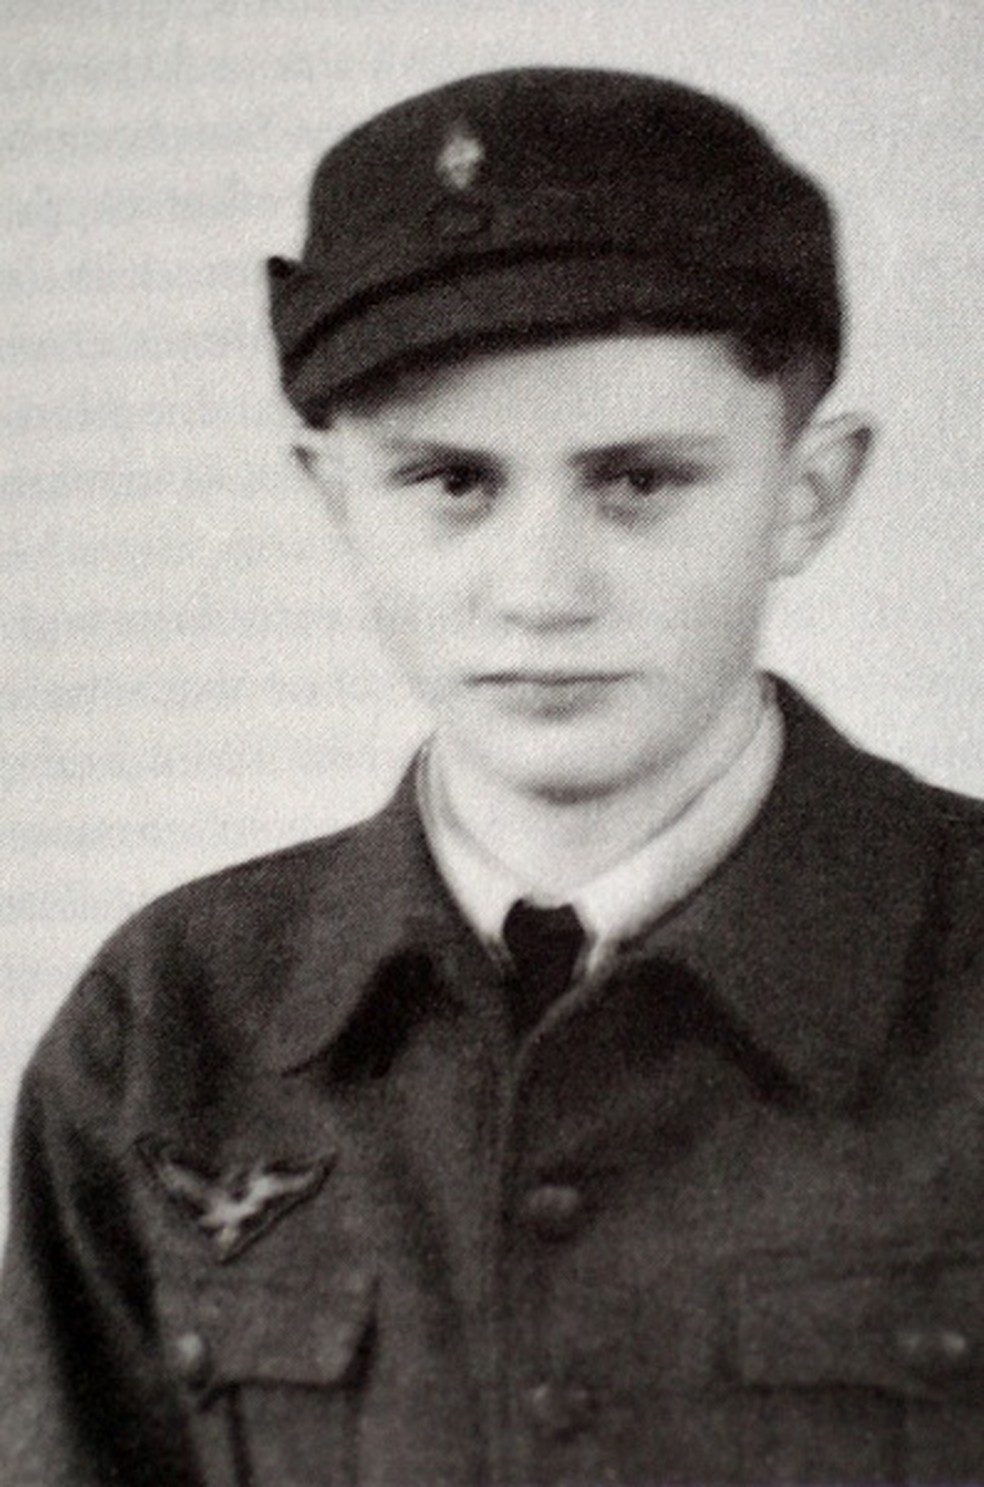 Foto tirada em 1943, durante a Segunda Guerra Mundial, de Joseph Ratzinger, o Papa Bento XVI, quando trabalhava como assistente da Força Aérea alemã — Foto: AFP PHOTO/KNA